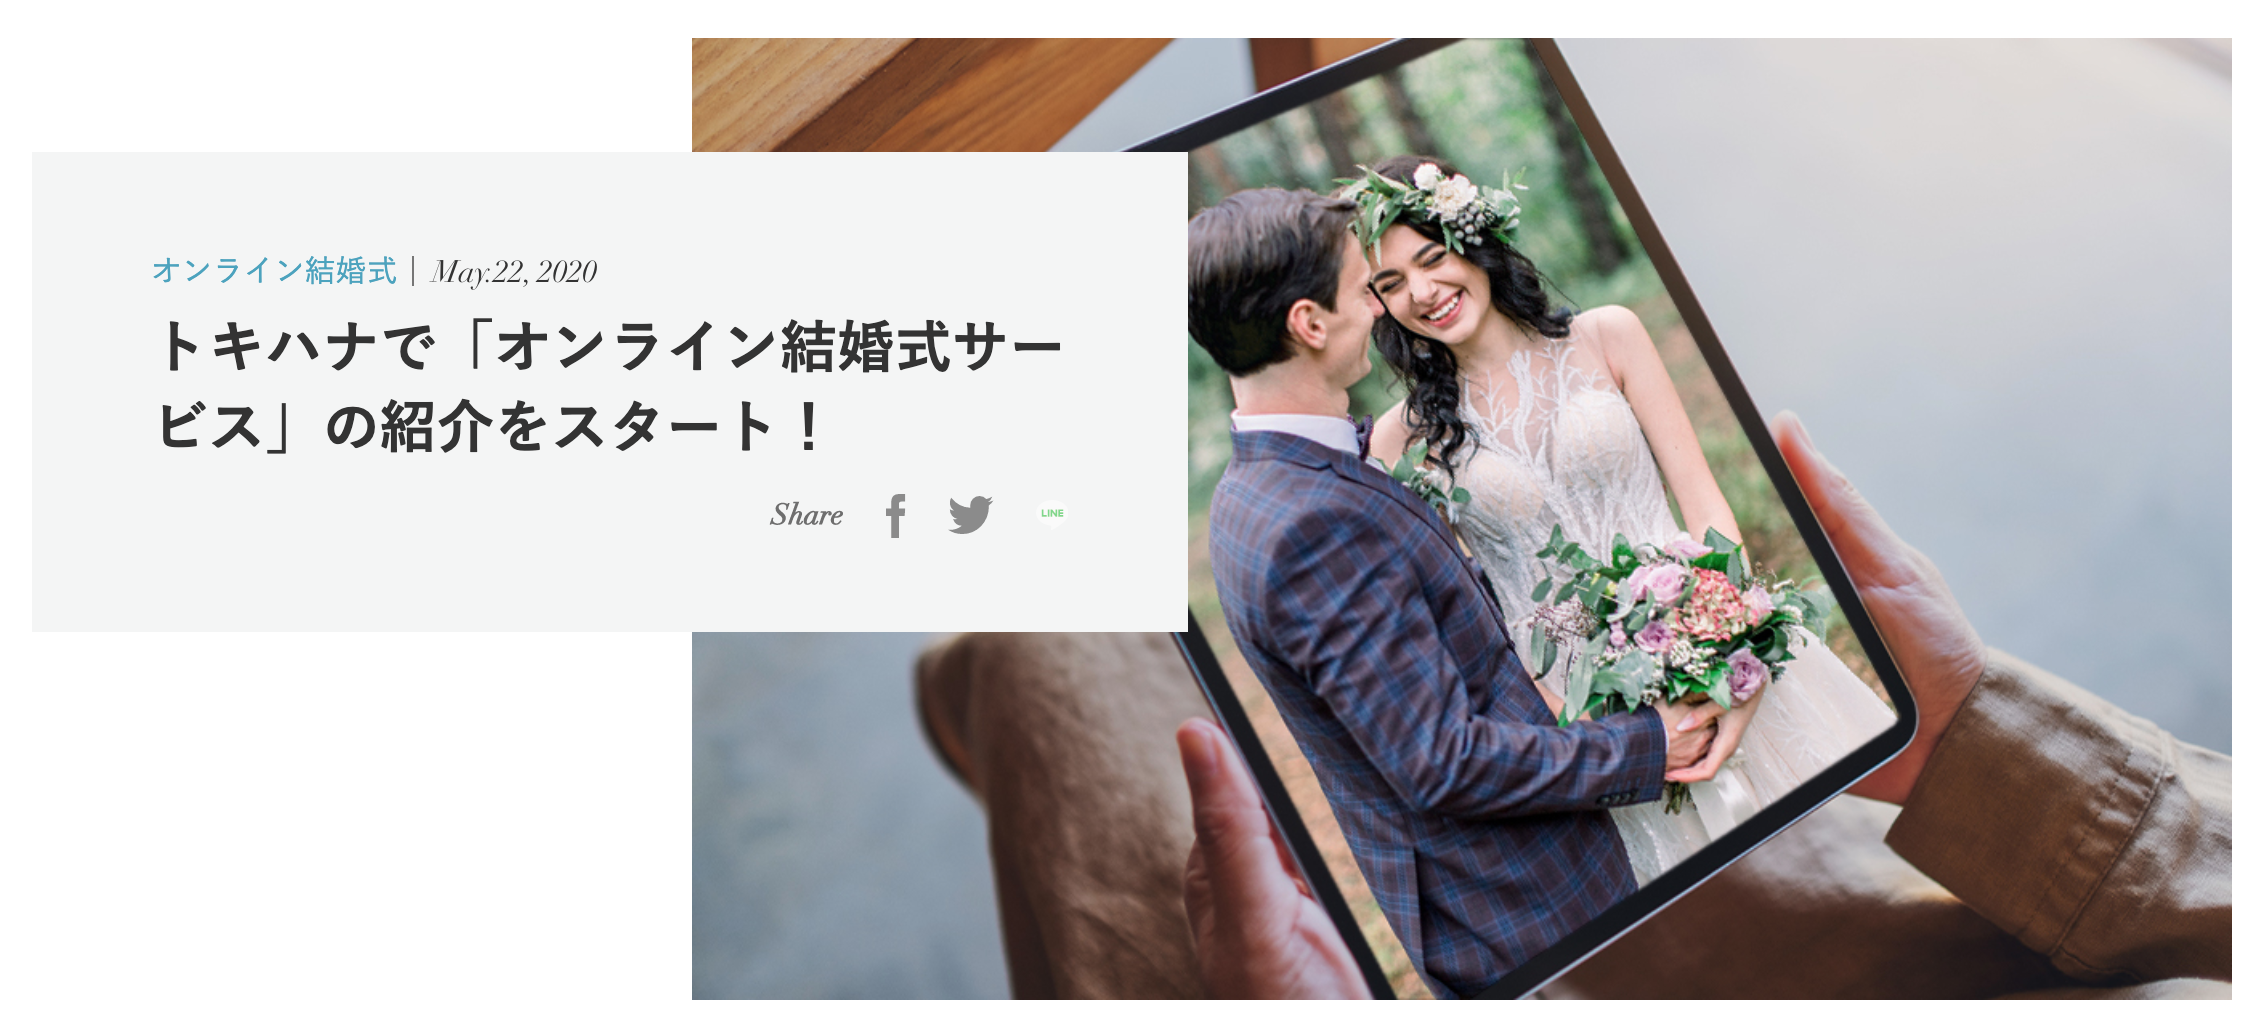 国内初 トキハナ オンライン結婚式紹介サービスを開始 株式会社リクシィのプレスリリース